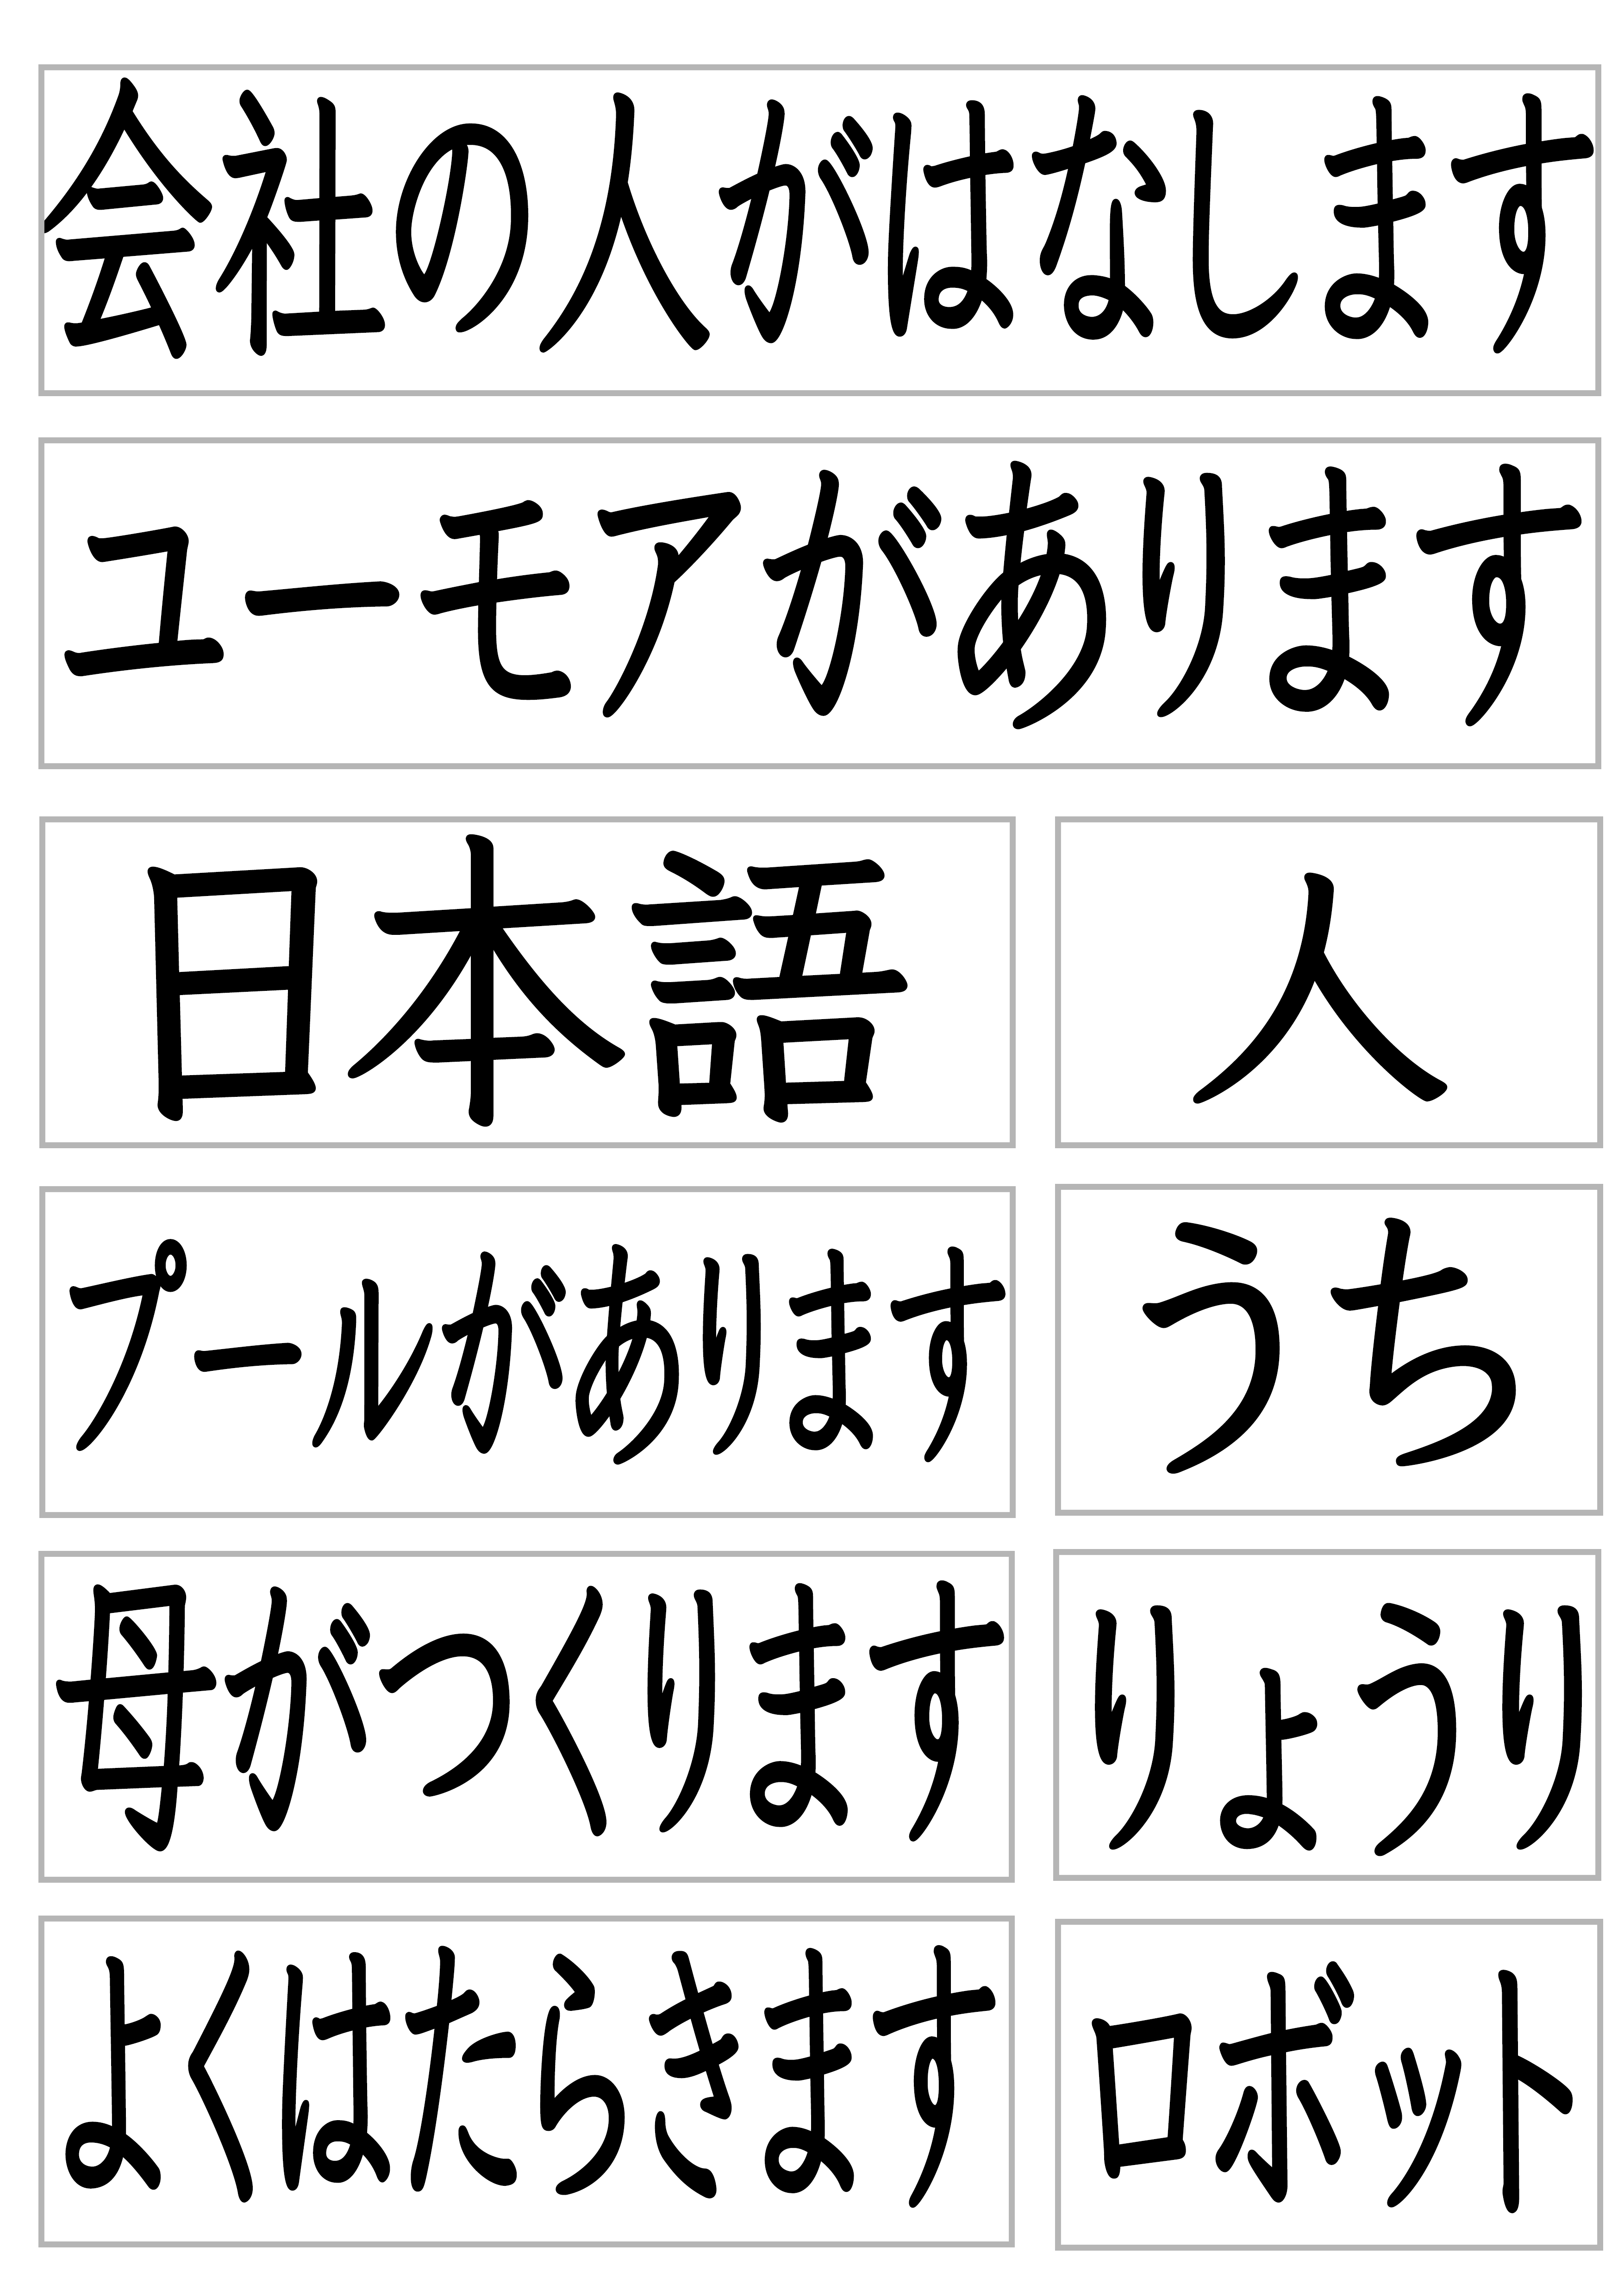 みんなの日本語22課で使える文字カード